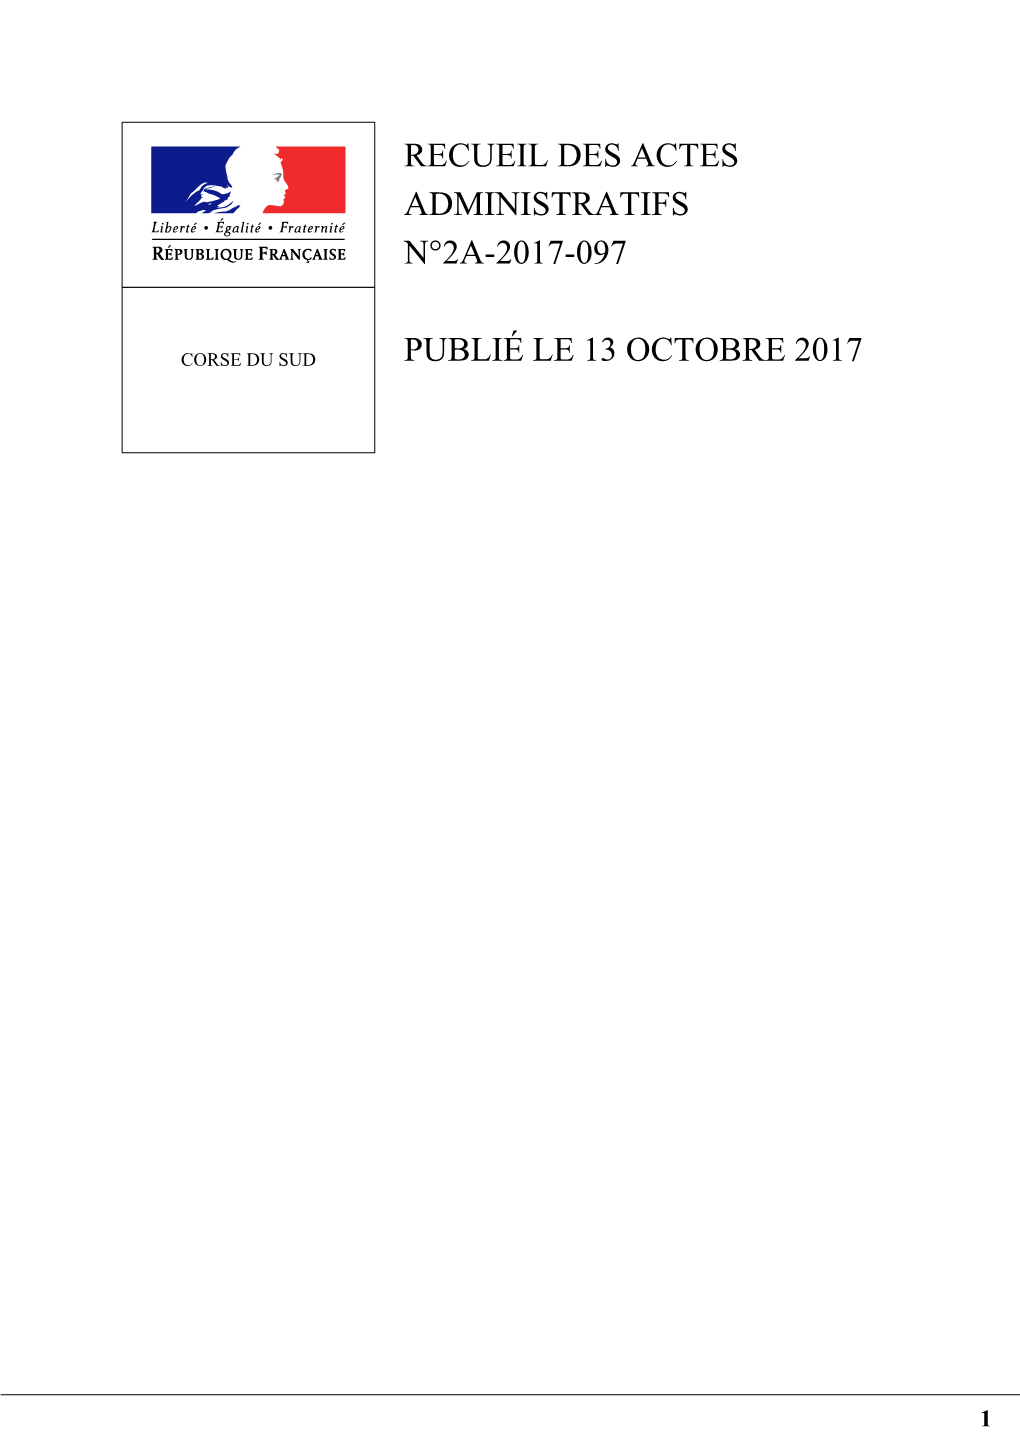 Recueil 2A 2017 097 Recueil Des Actes Administratifs